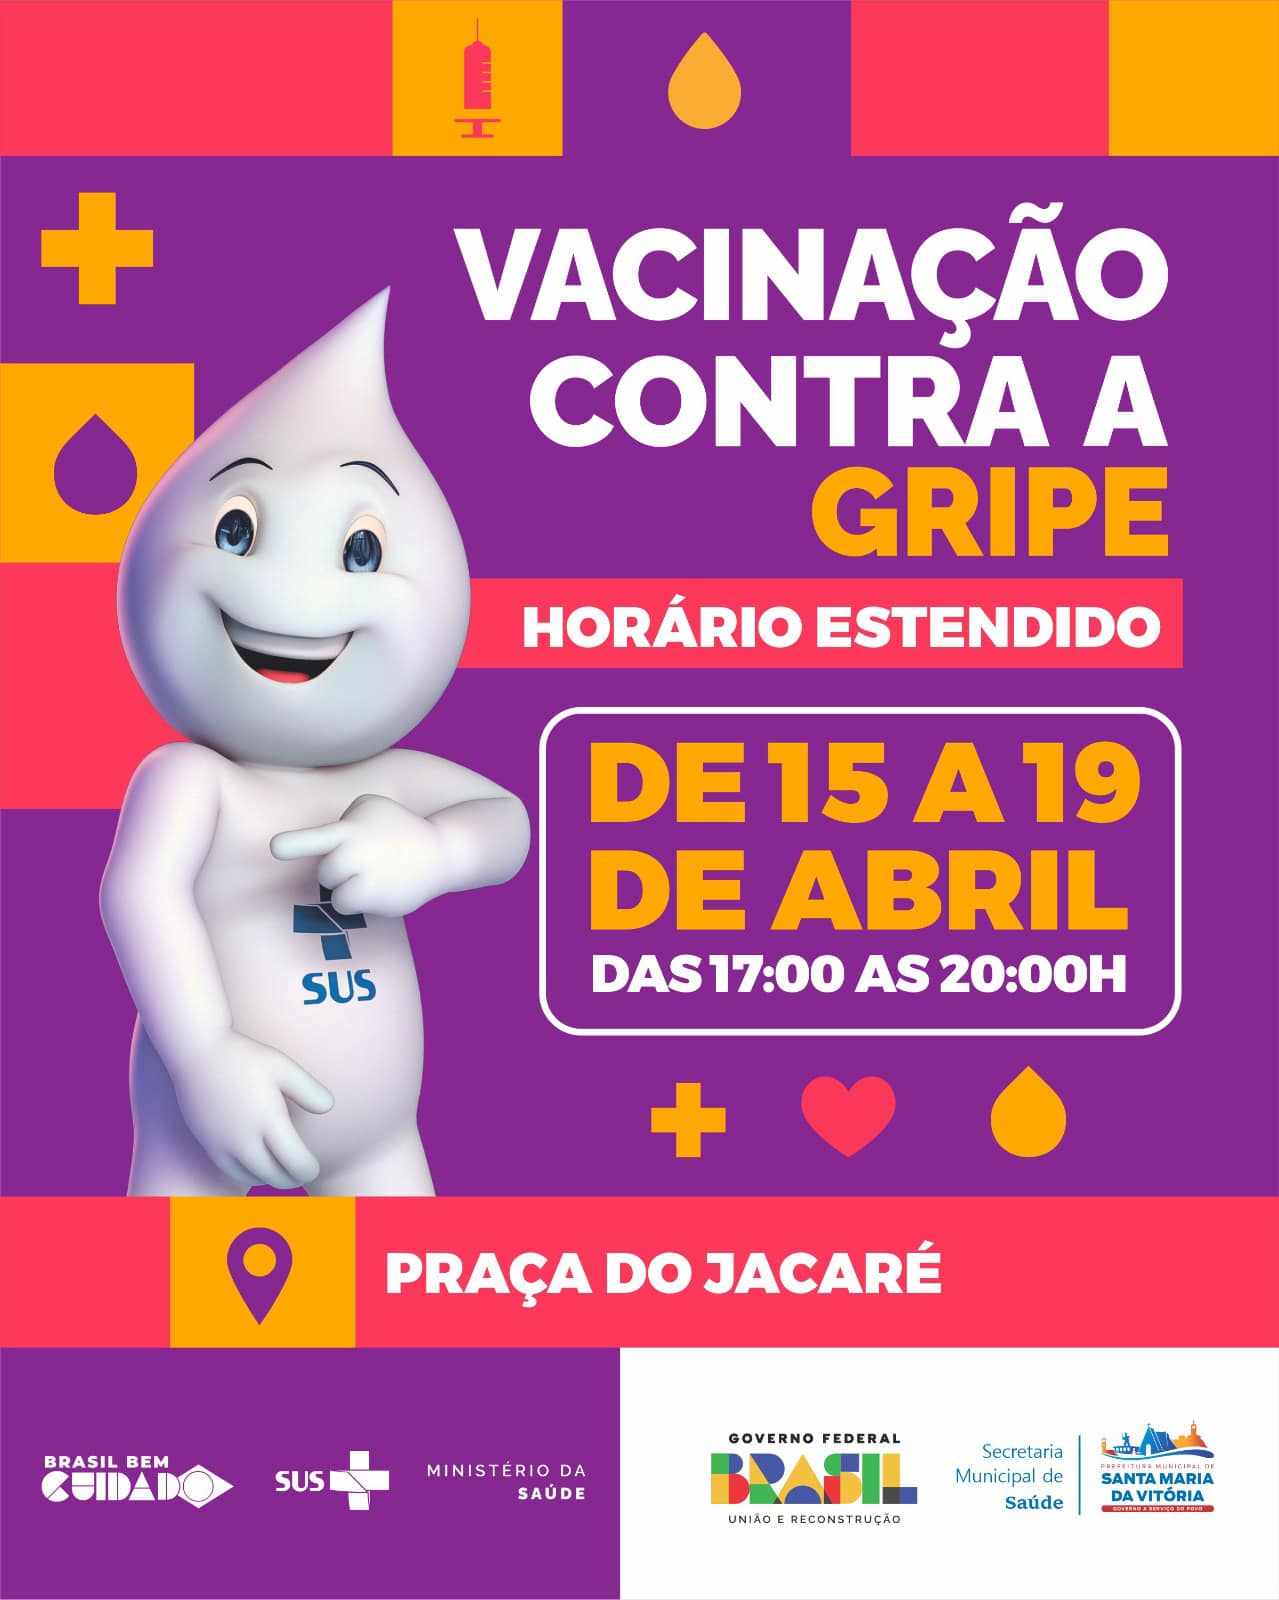 Teremos horários estendidos de vacinação contra a gripe de 15 a 19 de abril, das 17h00 às 20h00 na Praça do Jacaré